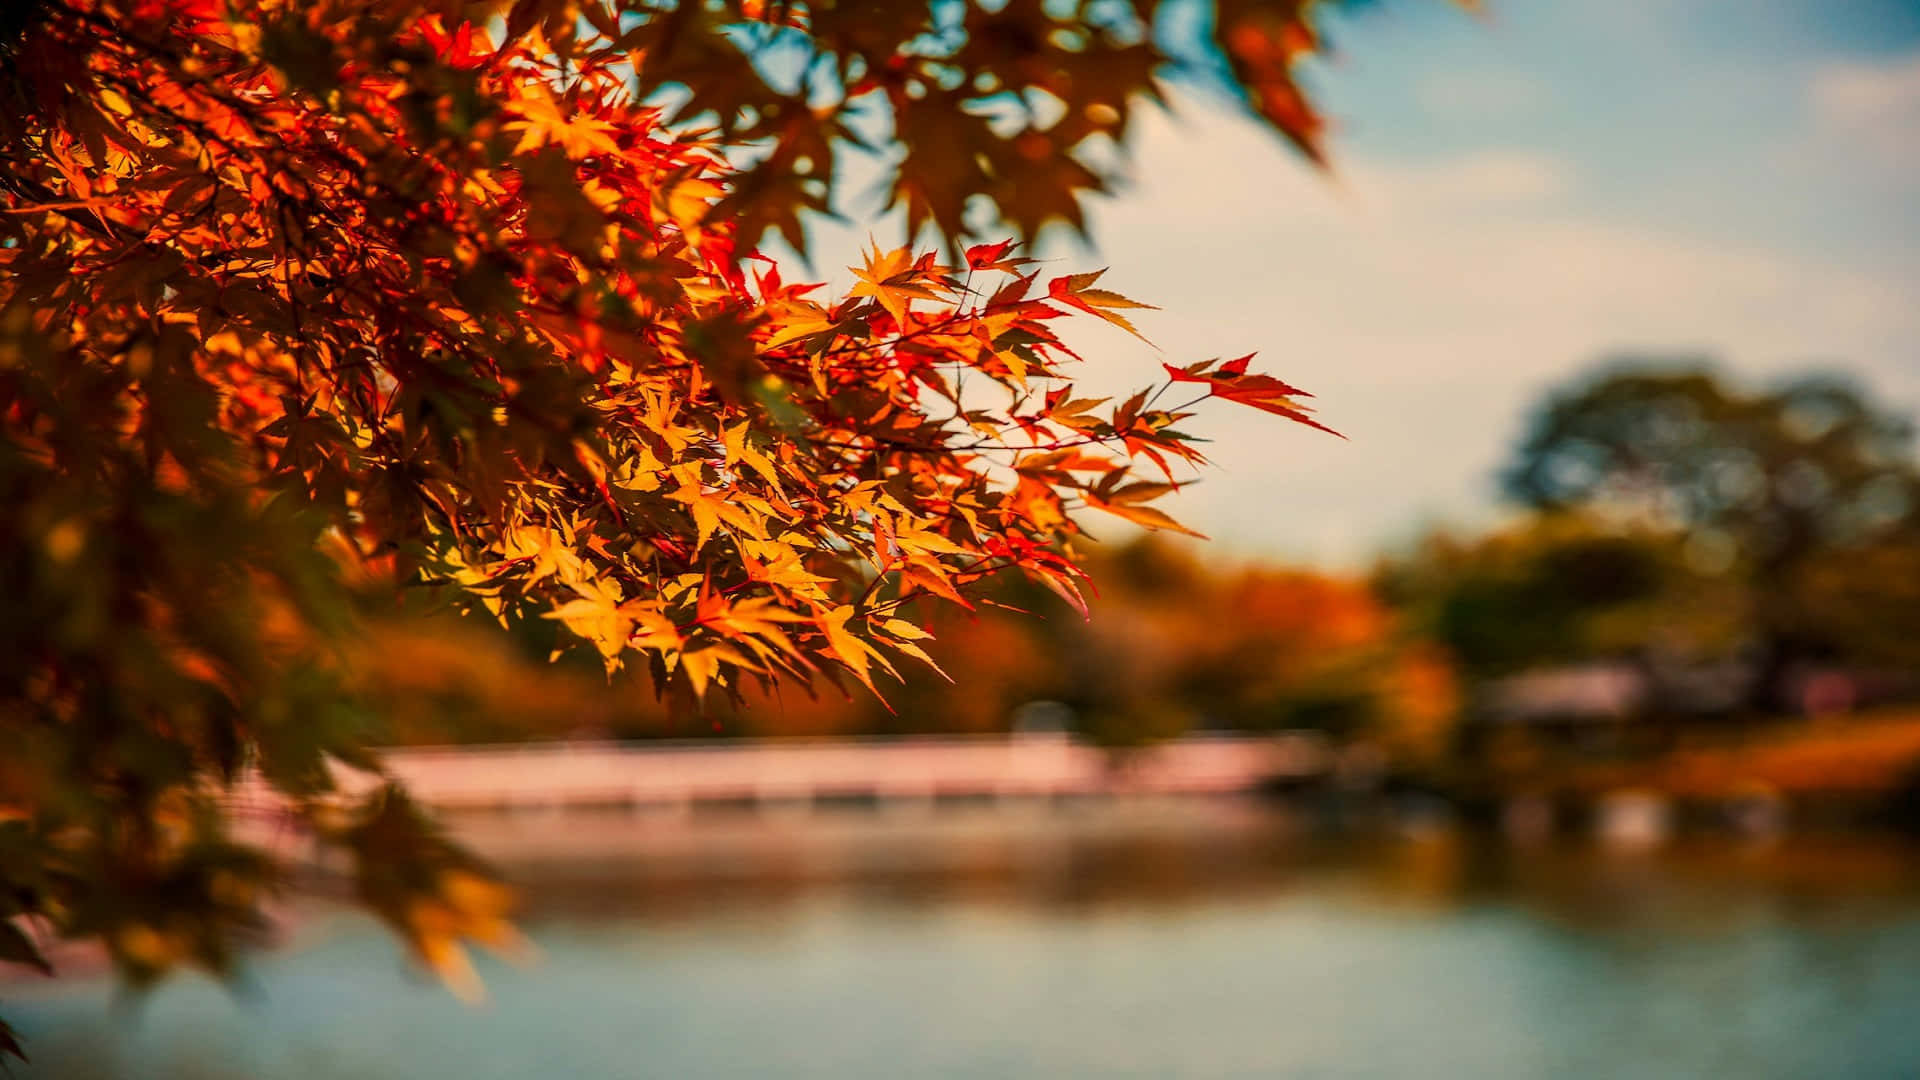 Autumn Leaves Over Water.jpg Wallpaper